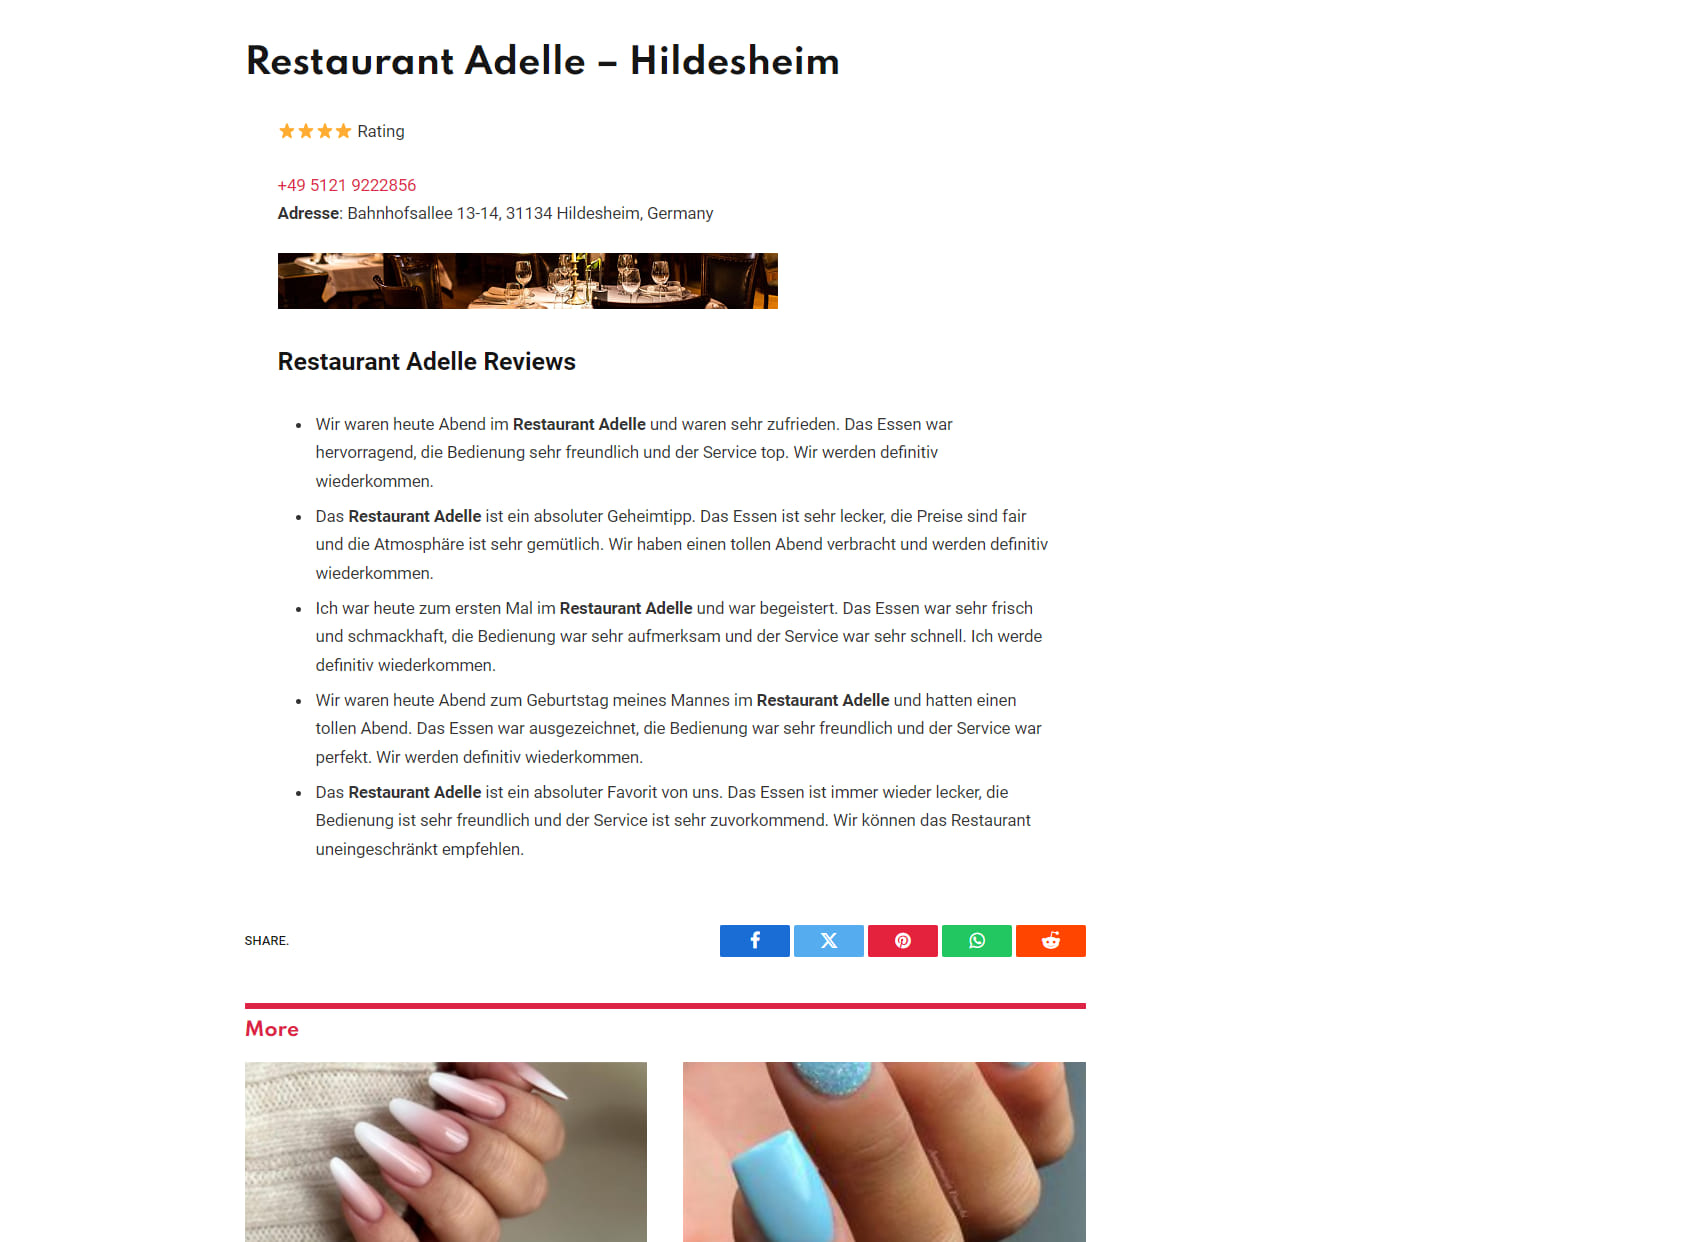 Restaurant Adelle - Hildesheim